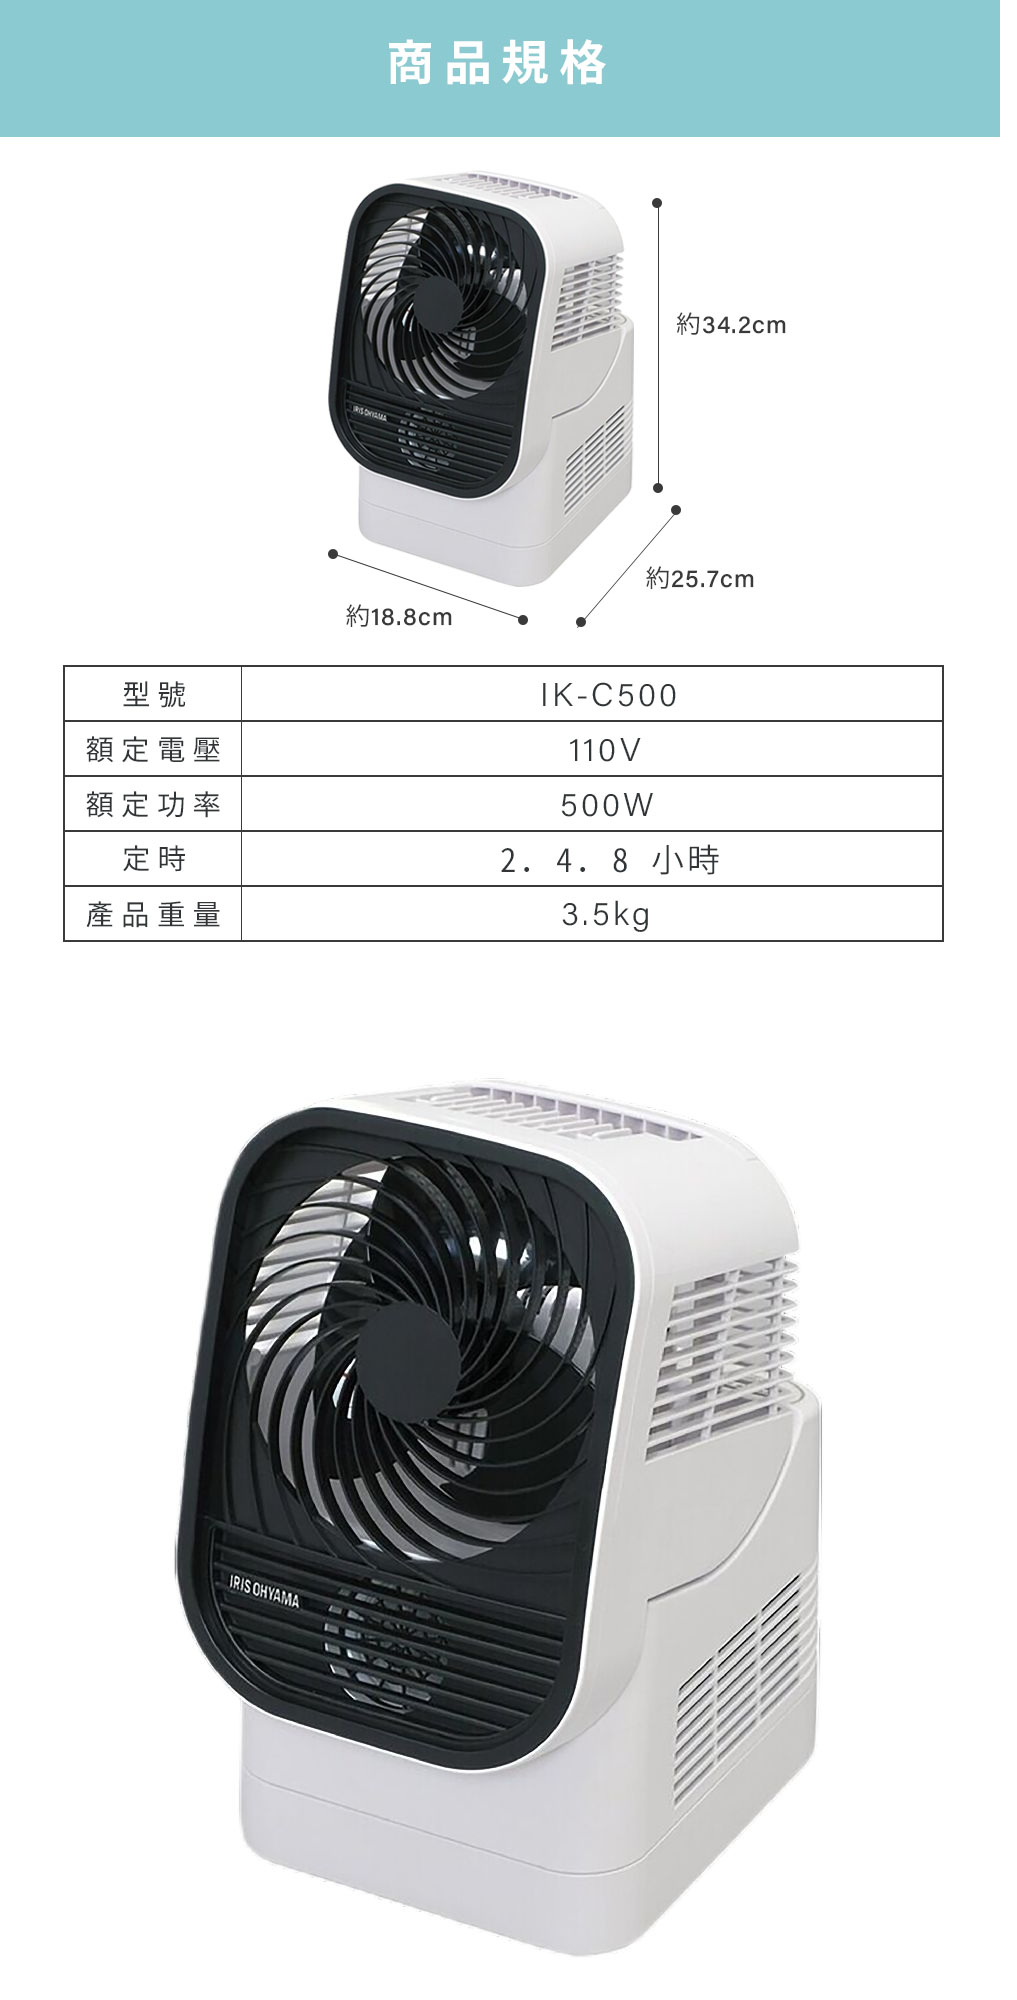 速乾【日本IRIS】循環衣物乾燥暖風機(IK-C500) 烘衣乾衣暖風風扇除濕一 